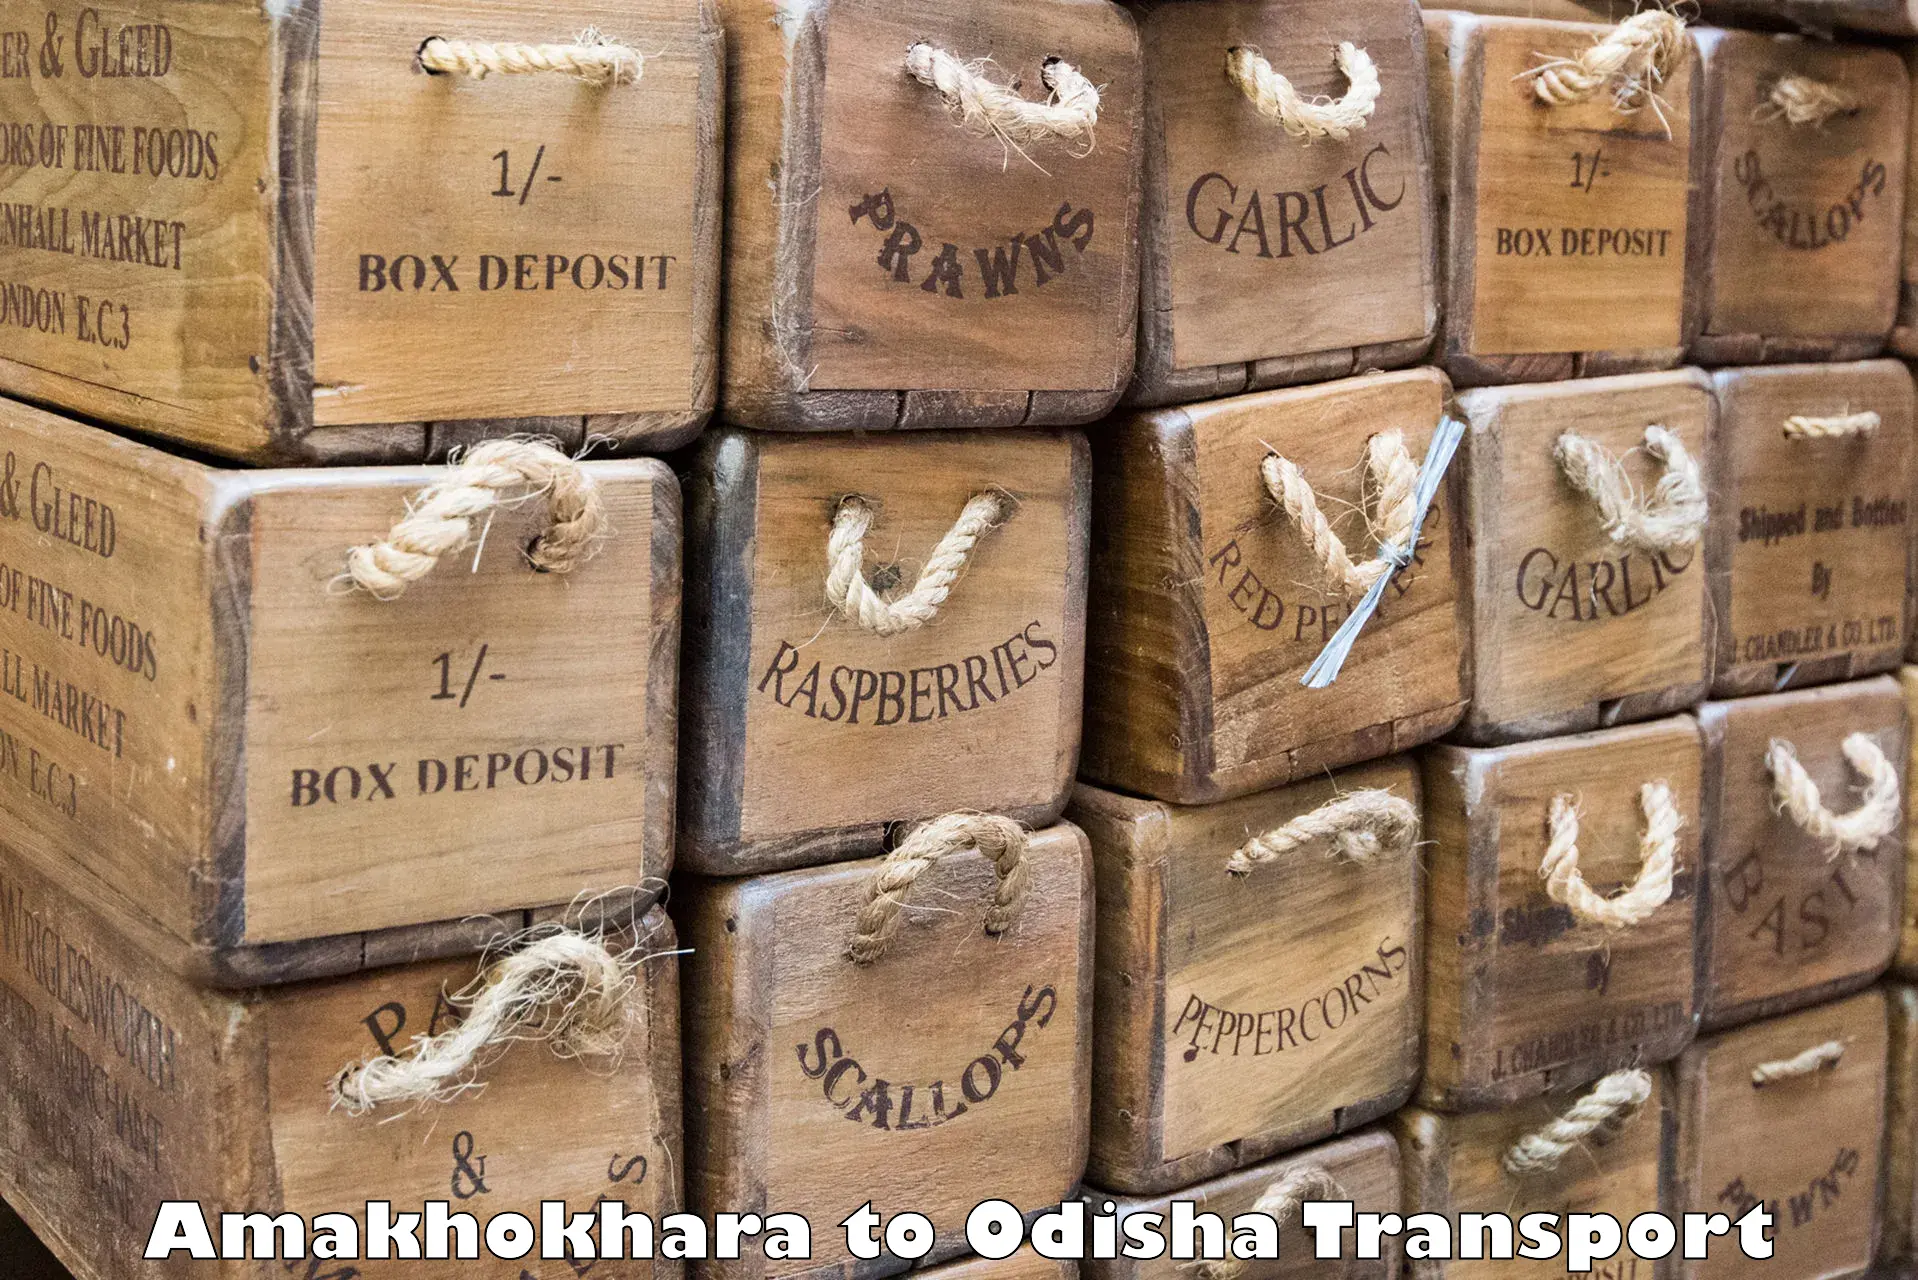 Truck transport companies in India Amakhokhara to Udayagiri Kandhamal